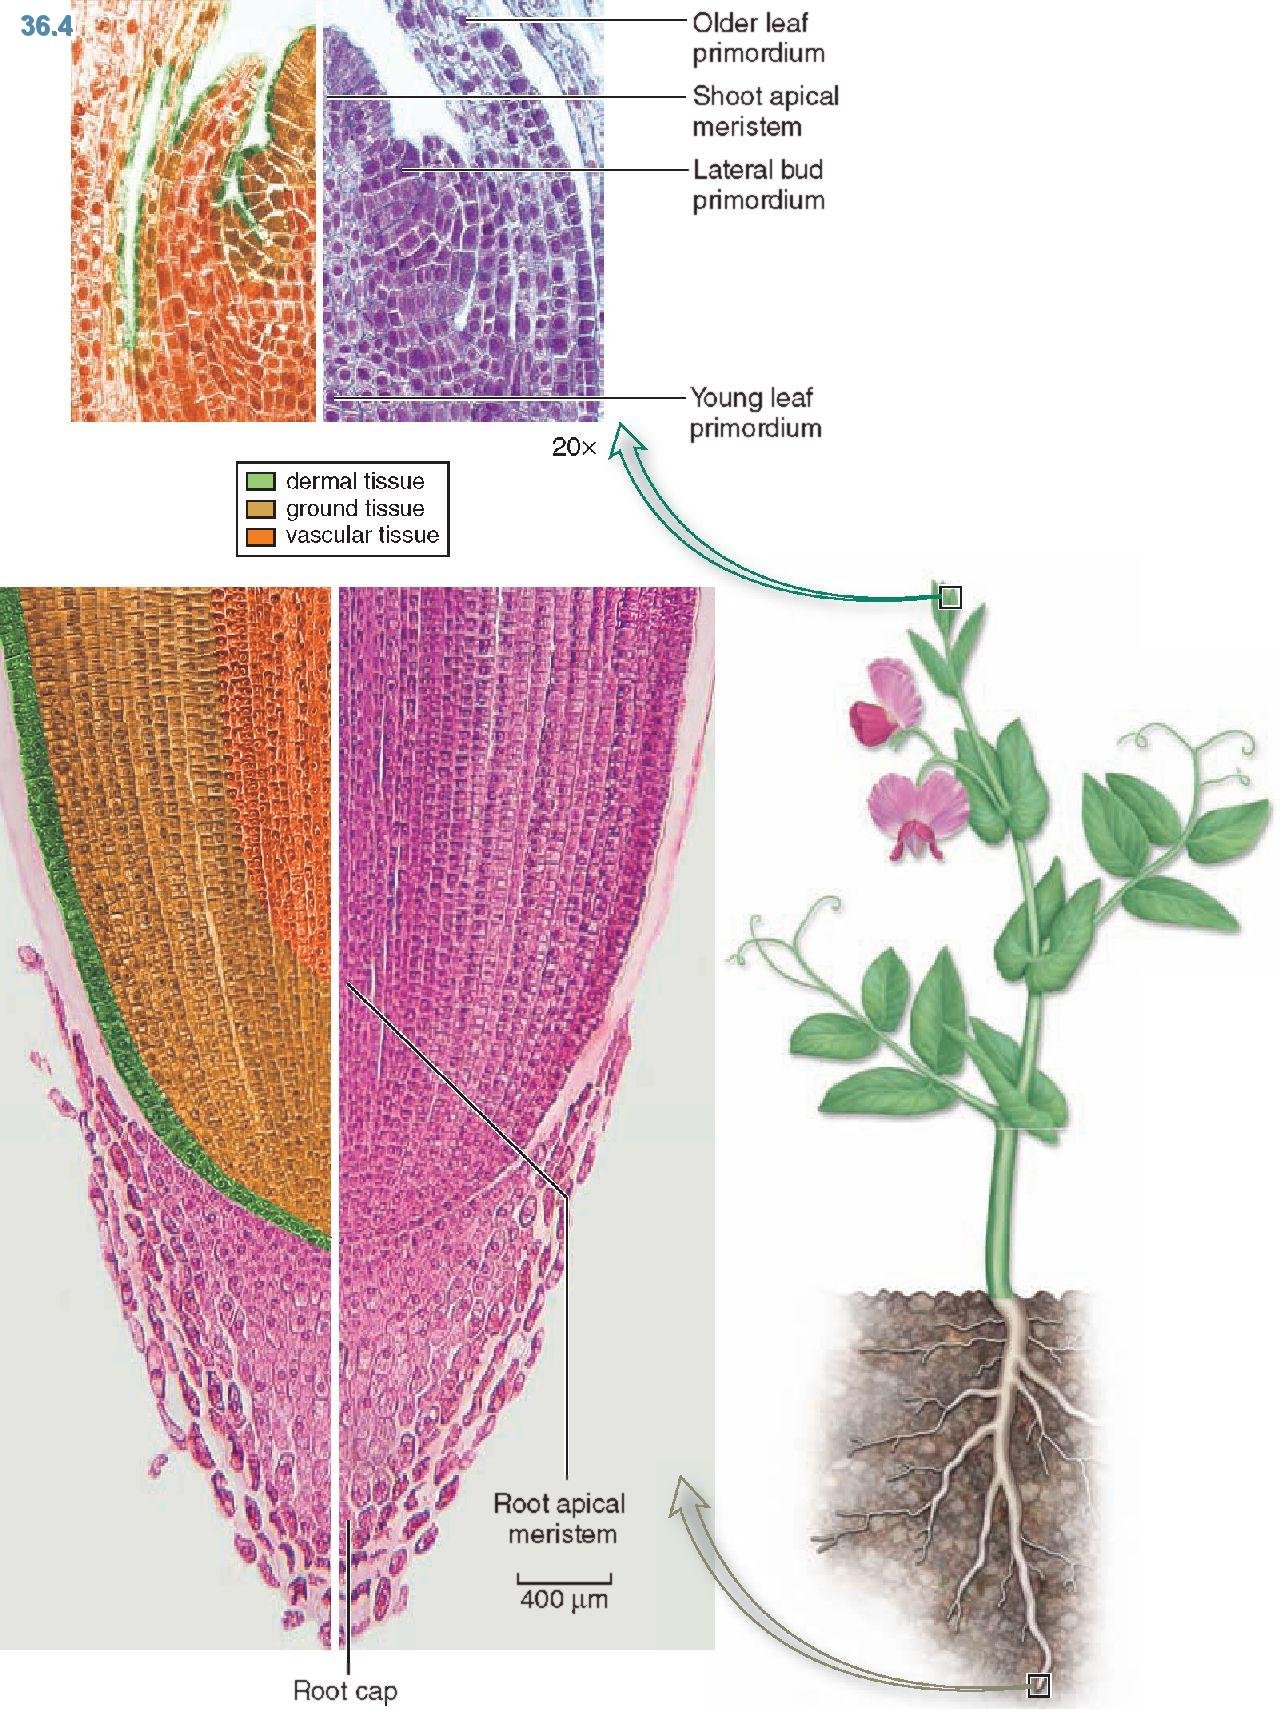 Меристематические ткани растений. Верхушечная меристема образовательная ткань. Образовательная ткань растений меристема. Верхушечная образовательная ткань корня. Апикальные клетки меристем корня.